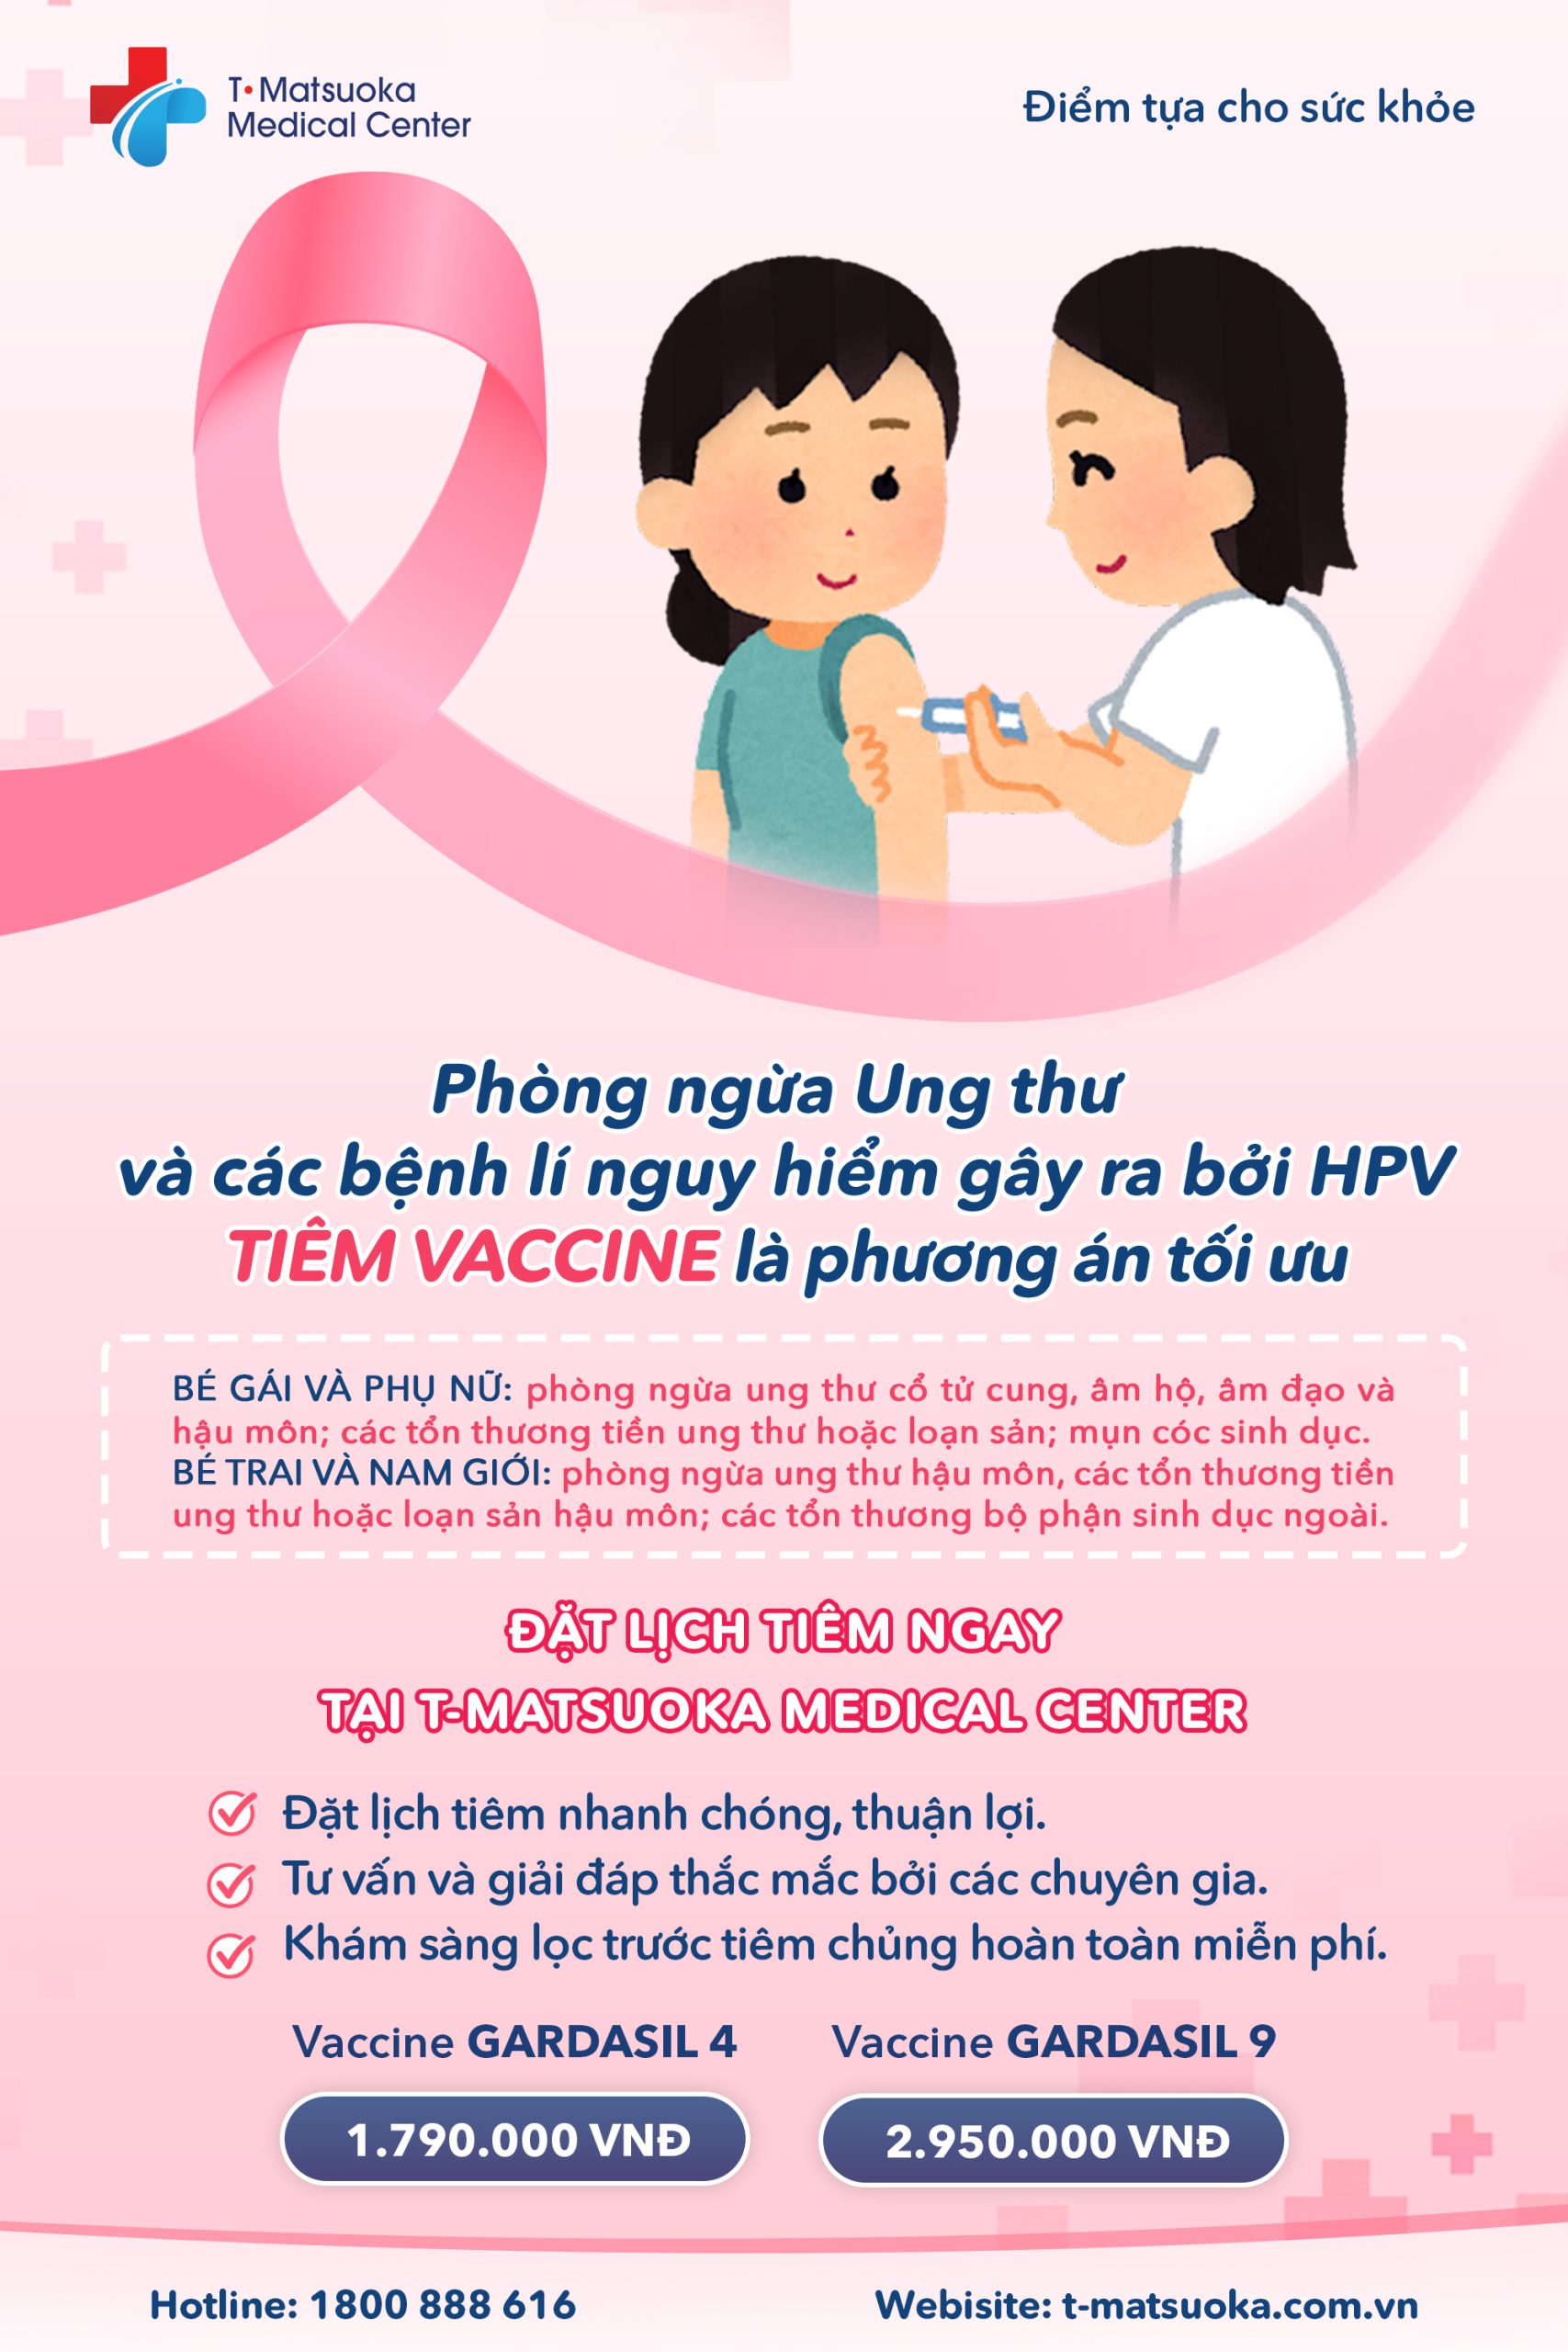 Khuyến nghị tiêm chủng HPV cho nam giới